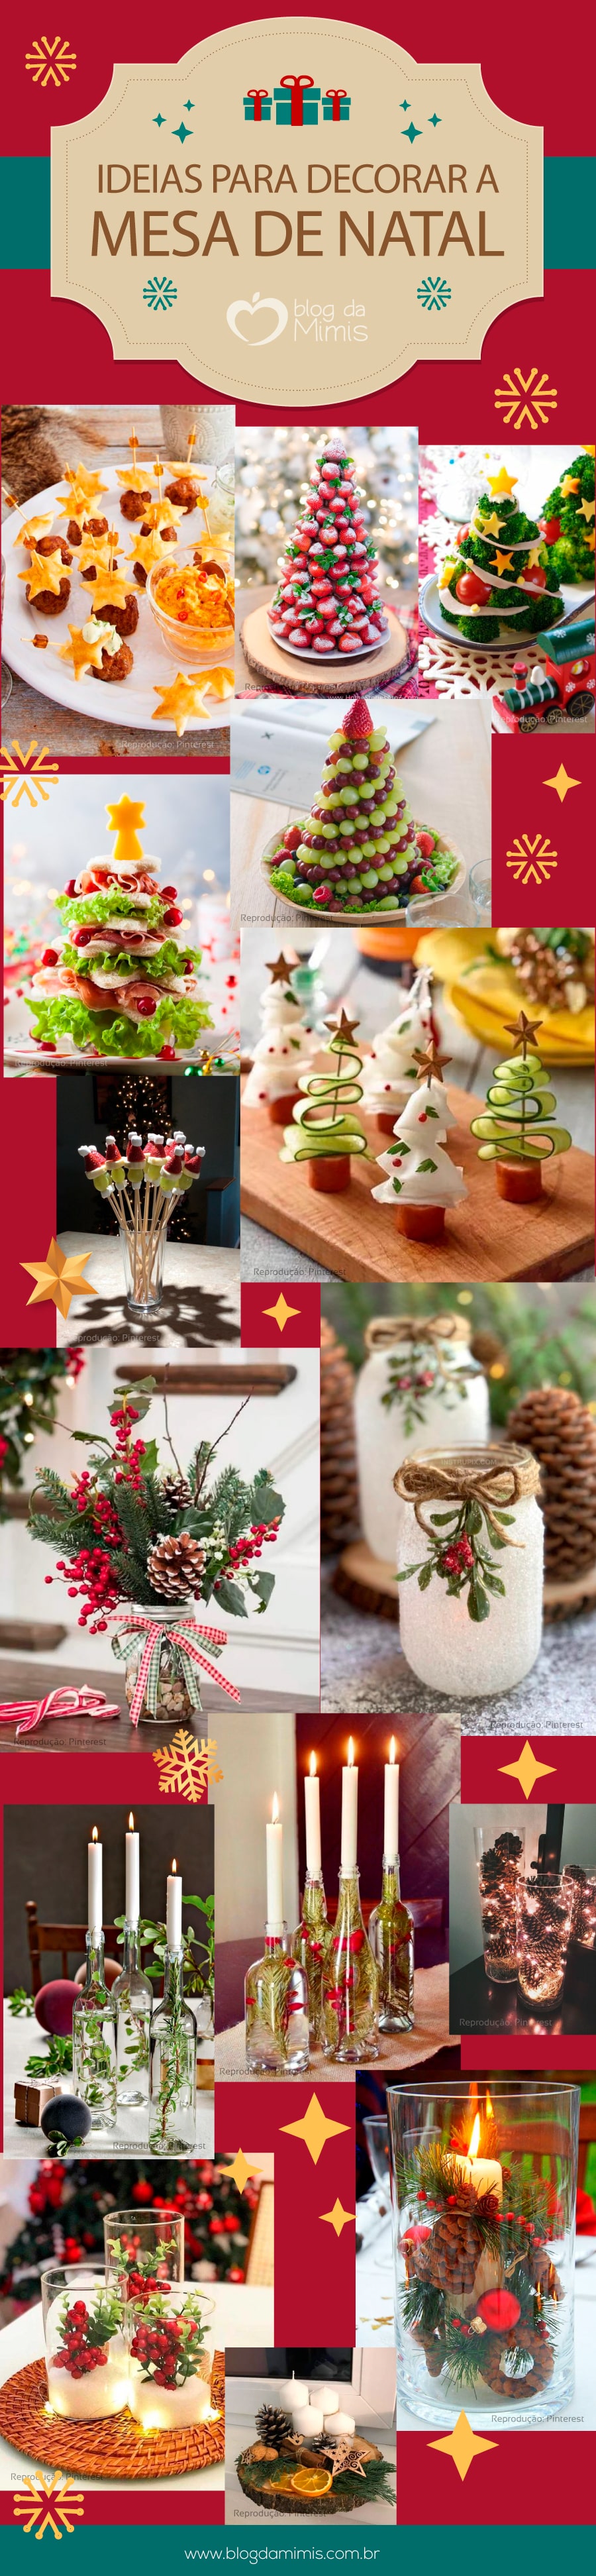 Ideias para decorar a mesa no Natal | Blog da Mimis